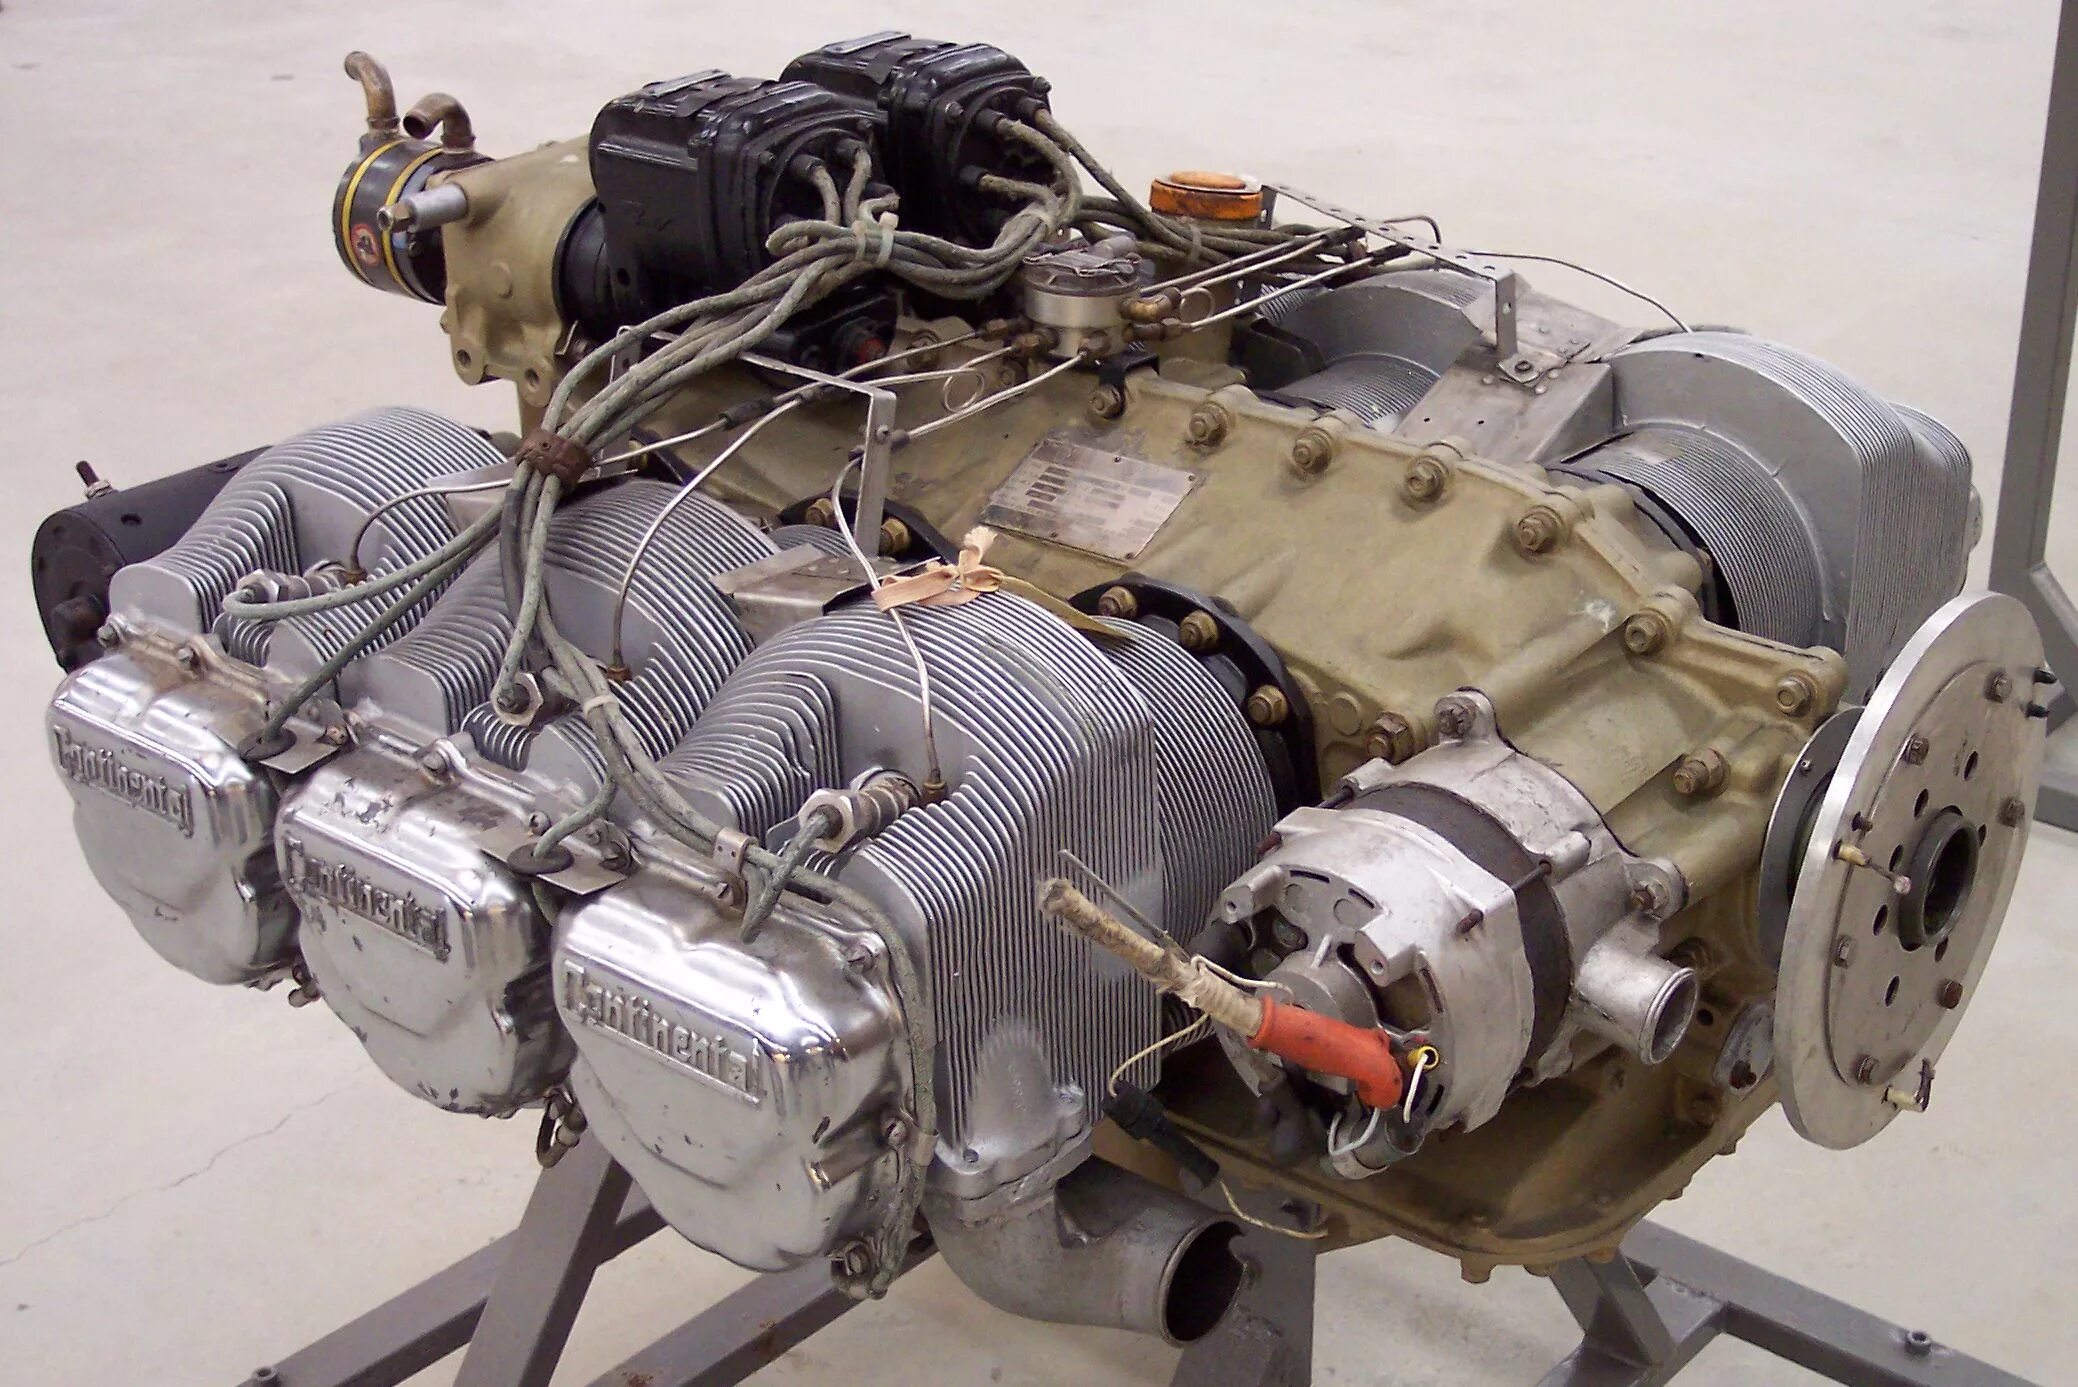 Немецкие двигатели автомобилей. Continental io-520. Двигатель Lycoming io-360-l2a. Двигатель Continental io-520-a. АПД-200 двигатель авиационный поршневой.